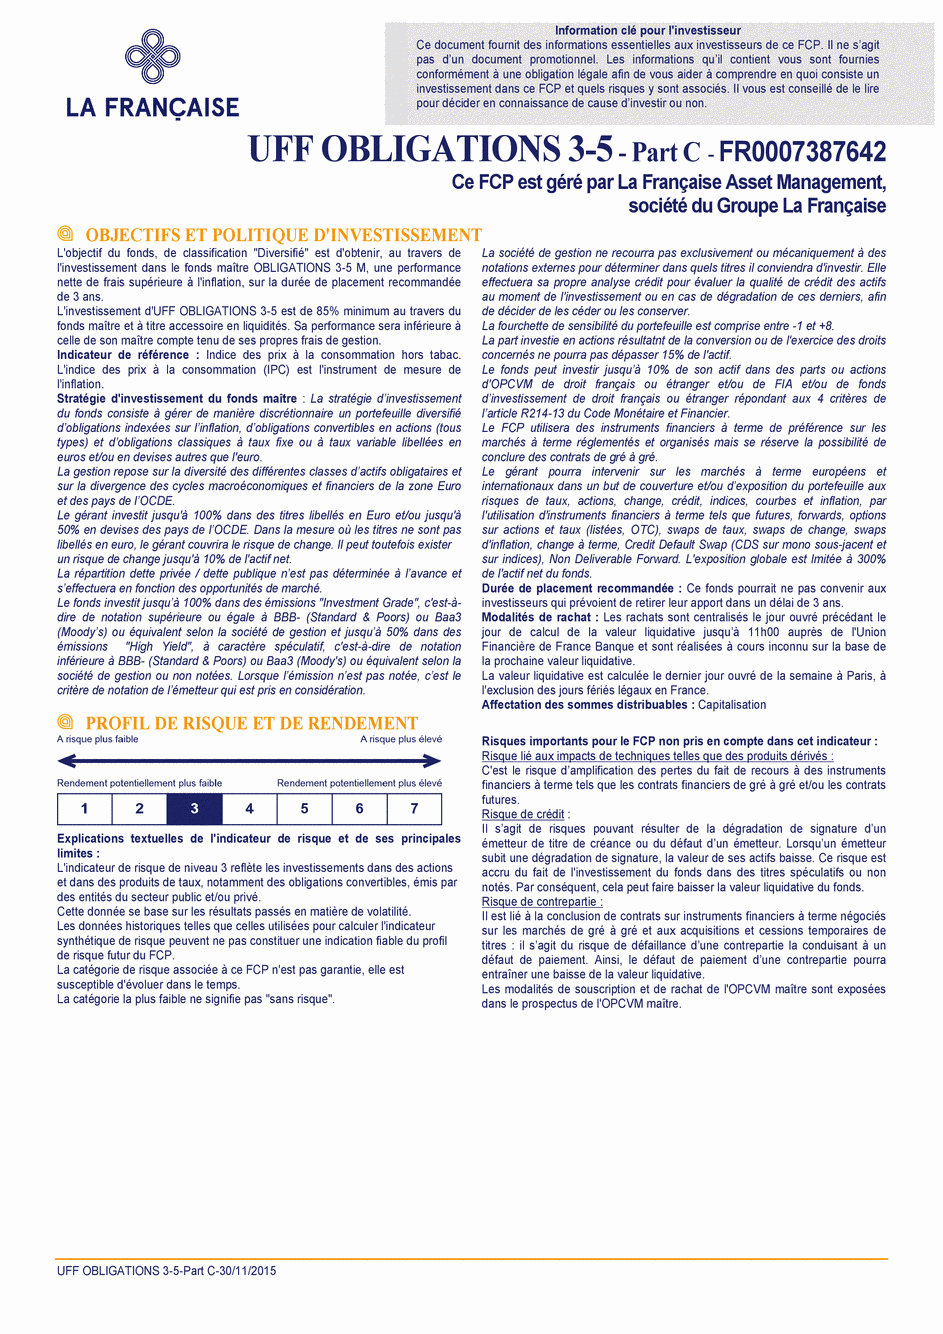 DICI UFF Obligations 3-5 (Part C) - 30/11/2015 - Français